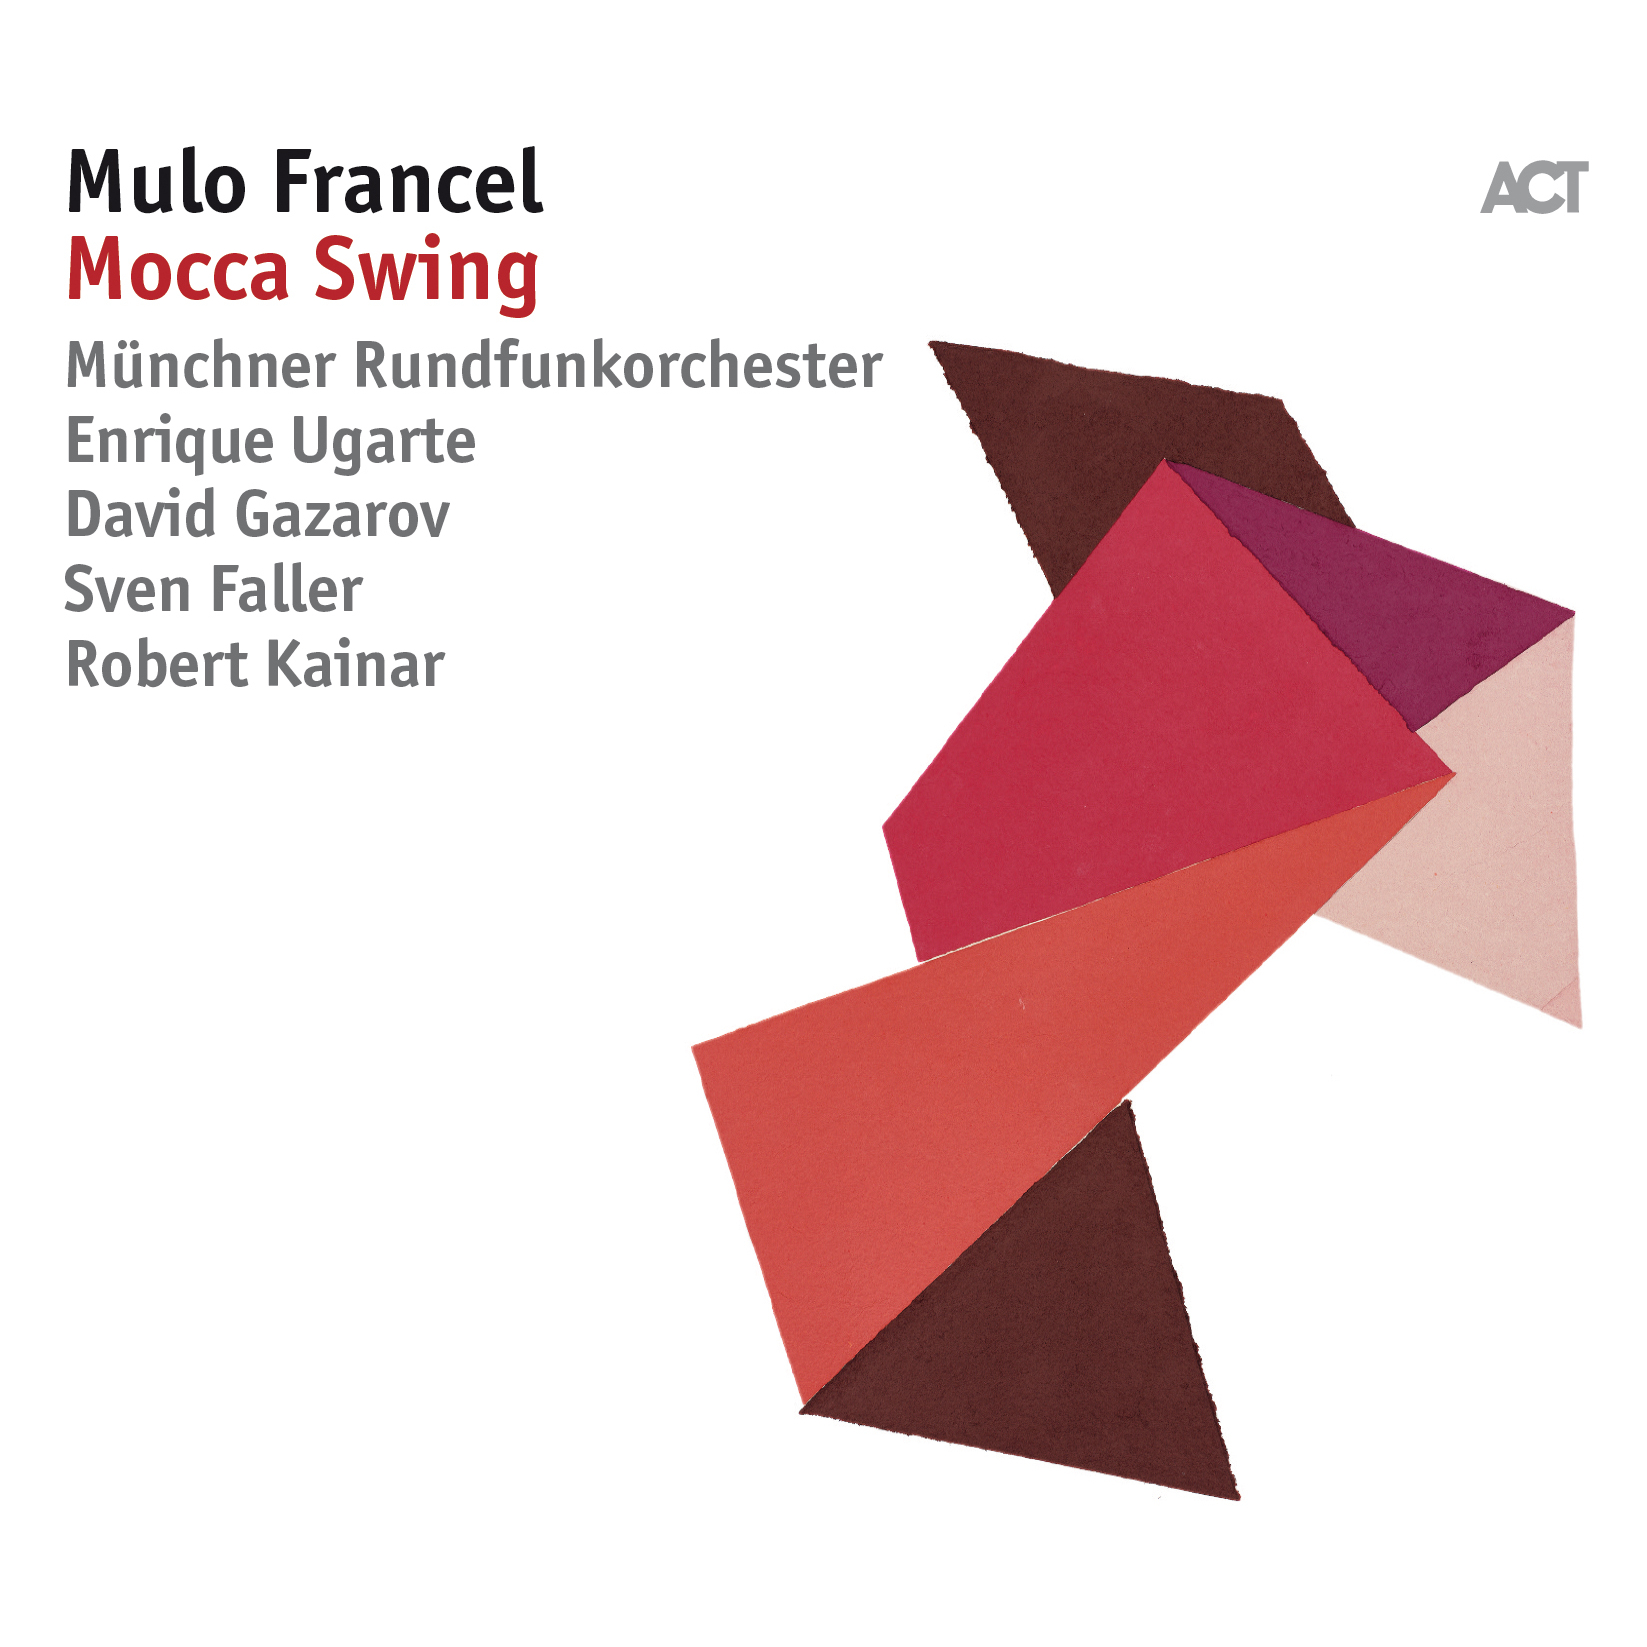 Mulo Francel - Mocca Swing - Bild 1 von 1